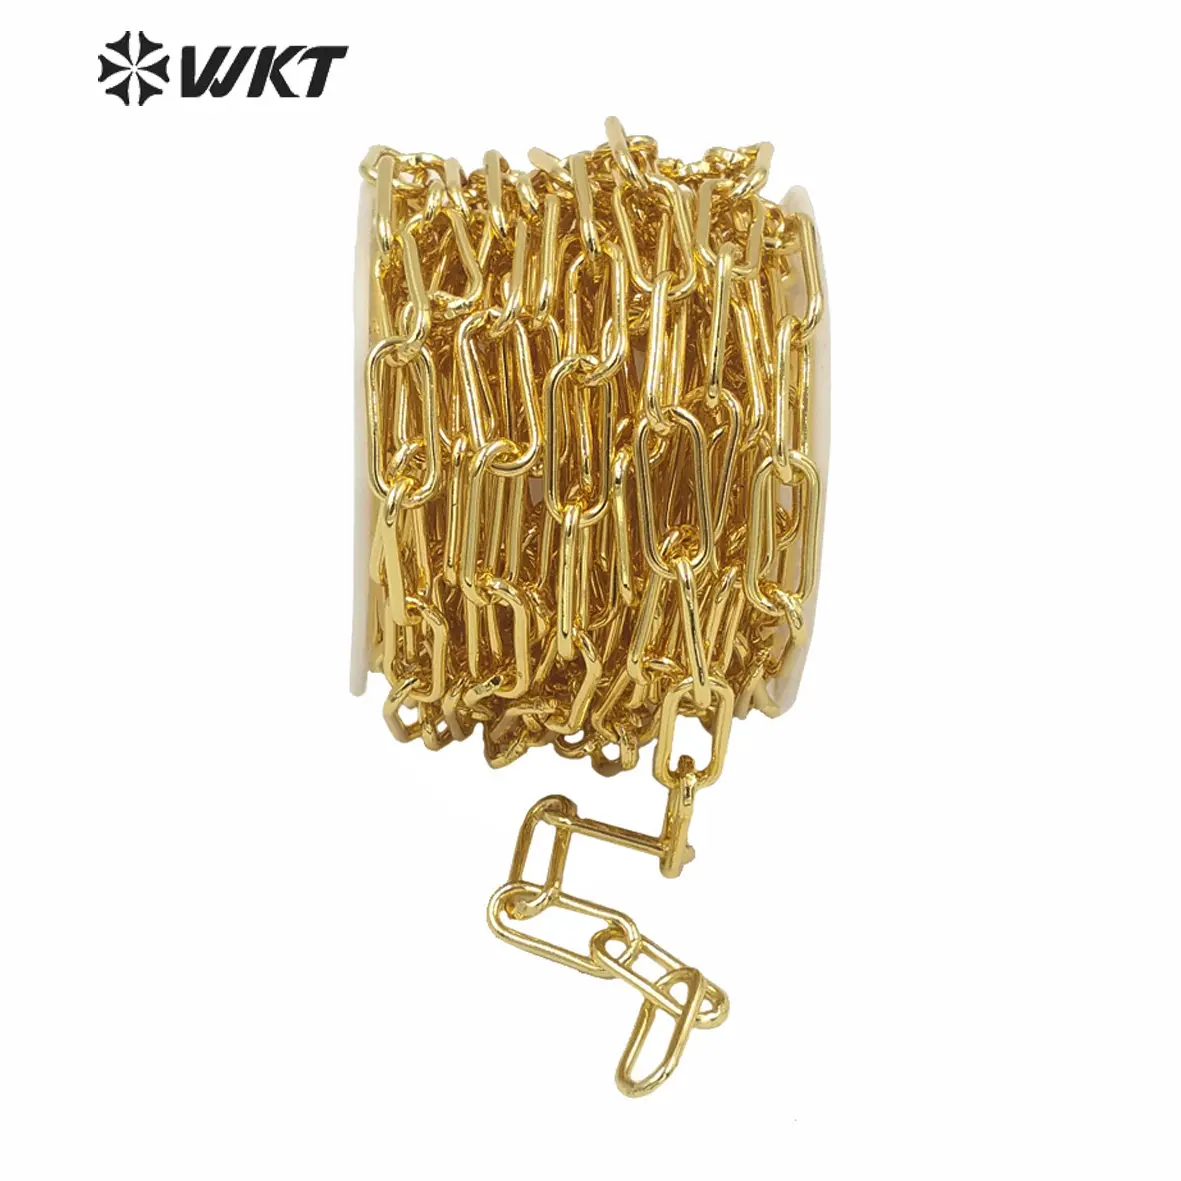 WT-BC149 WKT NOUVEAU Offres Spéciales grand sur liés chunky chaîne plaqué or chaîne en laiton pour femmes collier populaire punk chaîne